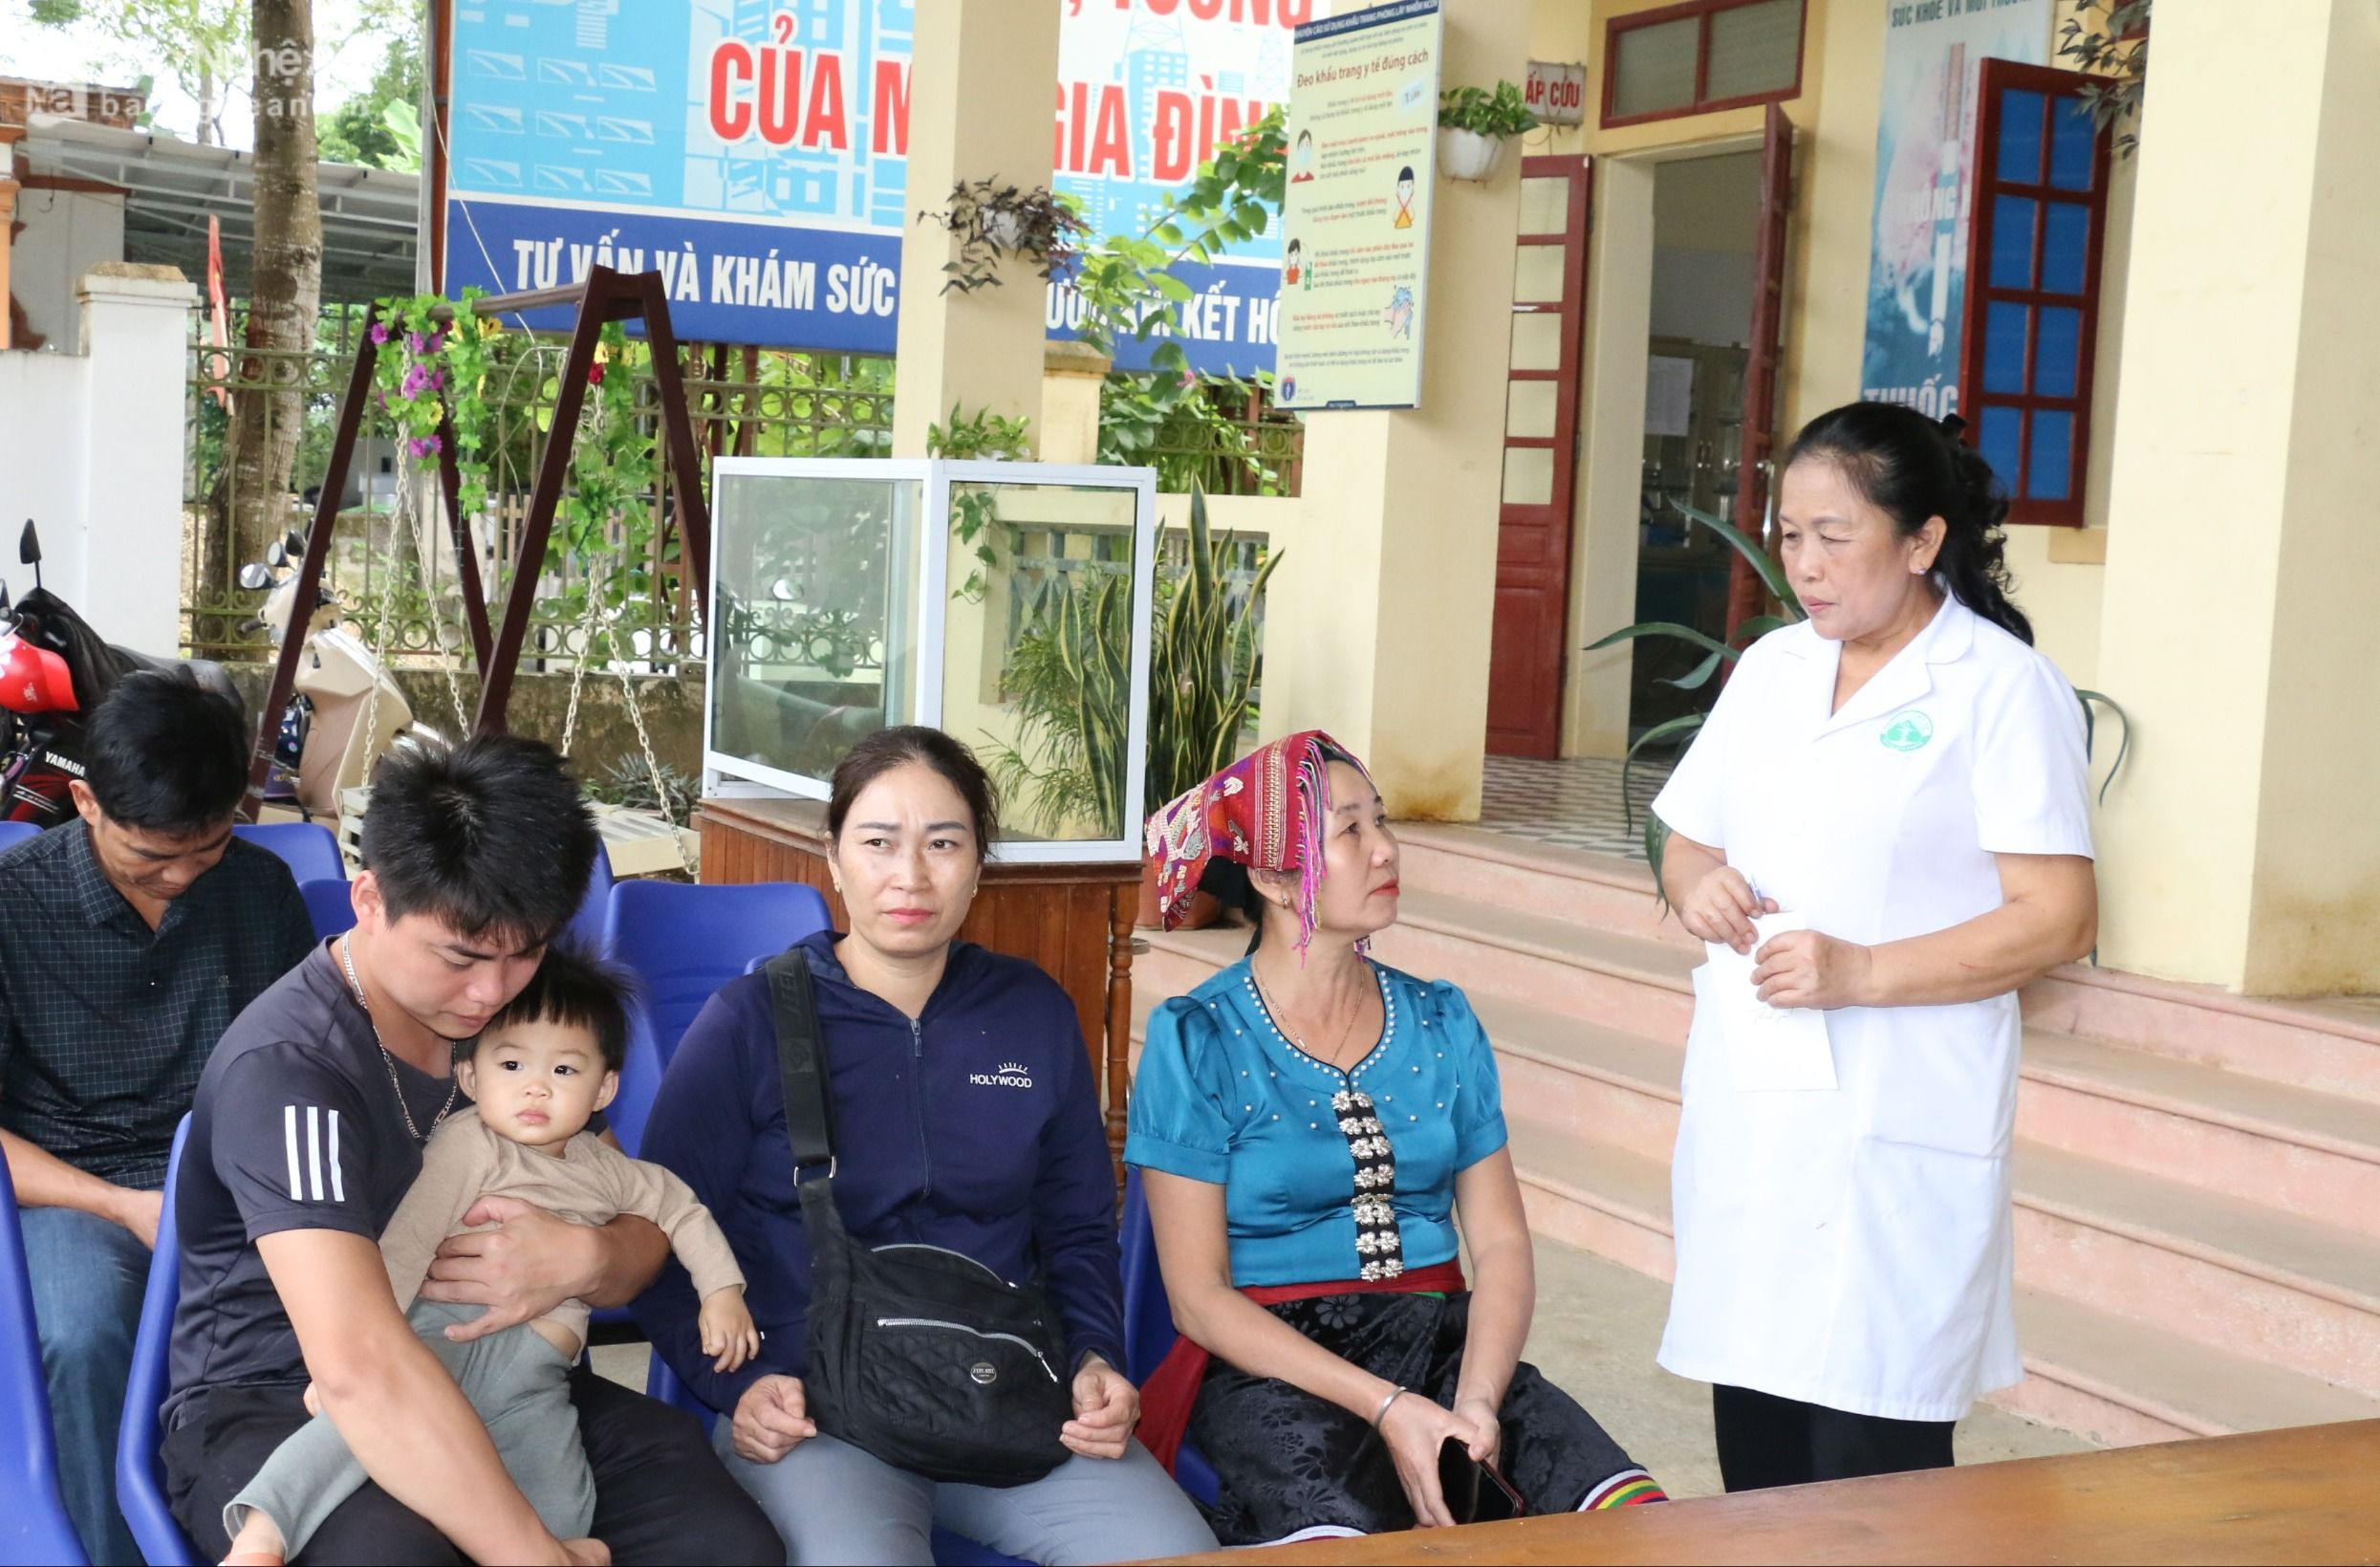 Nhân viên ở TRạm y tế thị trấn Kim Sơn chia sẻ về việc chăm sóc con trẻ cho người dân trên địa bàn.JPG